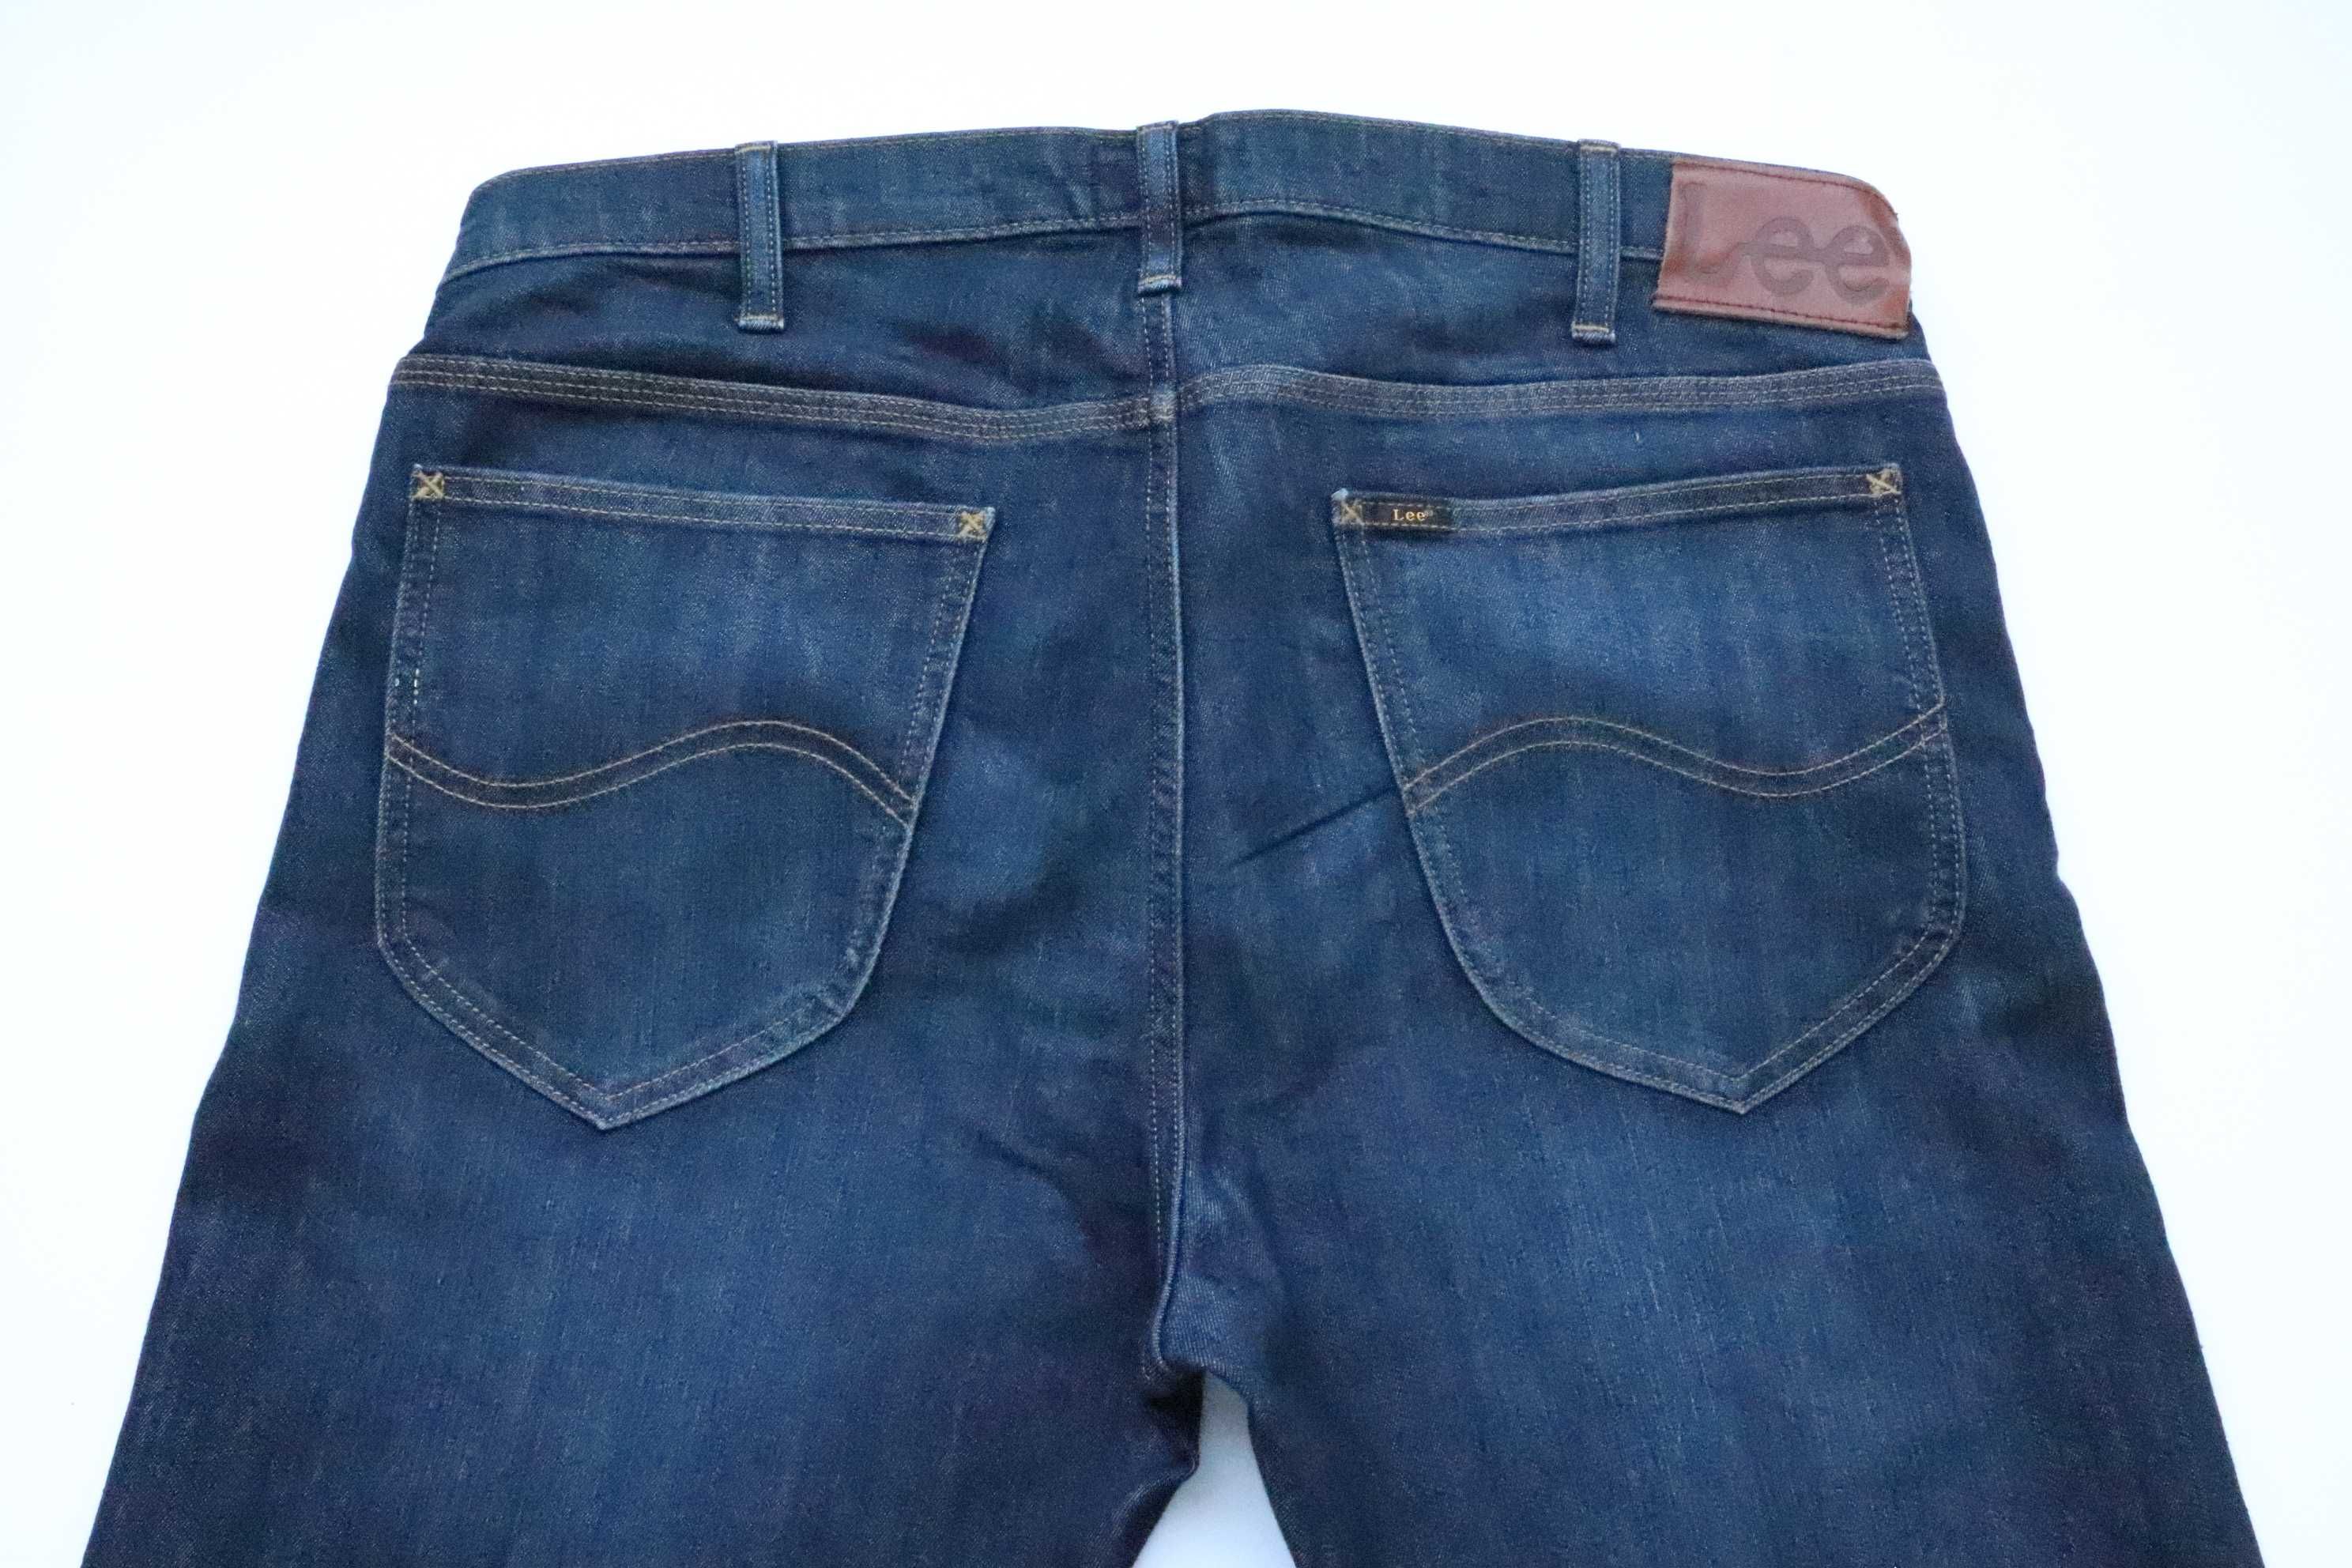 LEE DAREN BUTTON FLY W36 L30 męskie spodnie jeansy regular fit